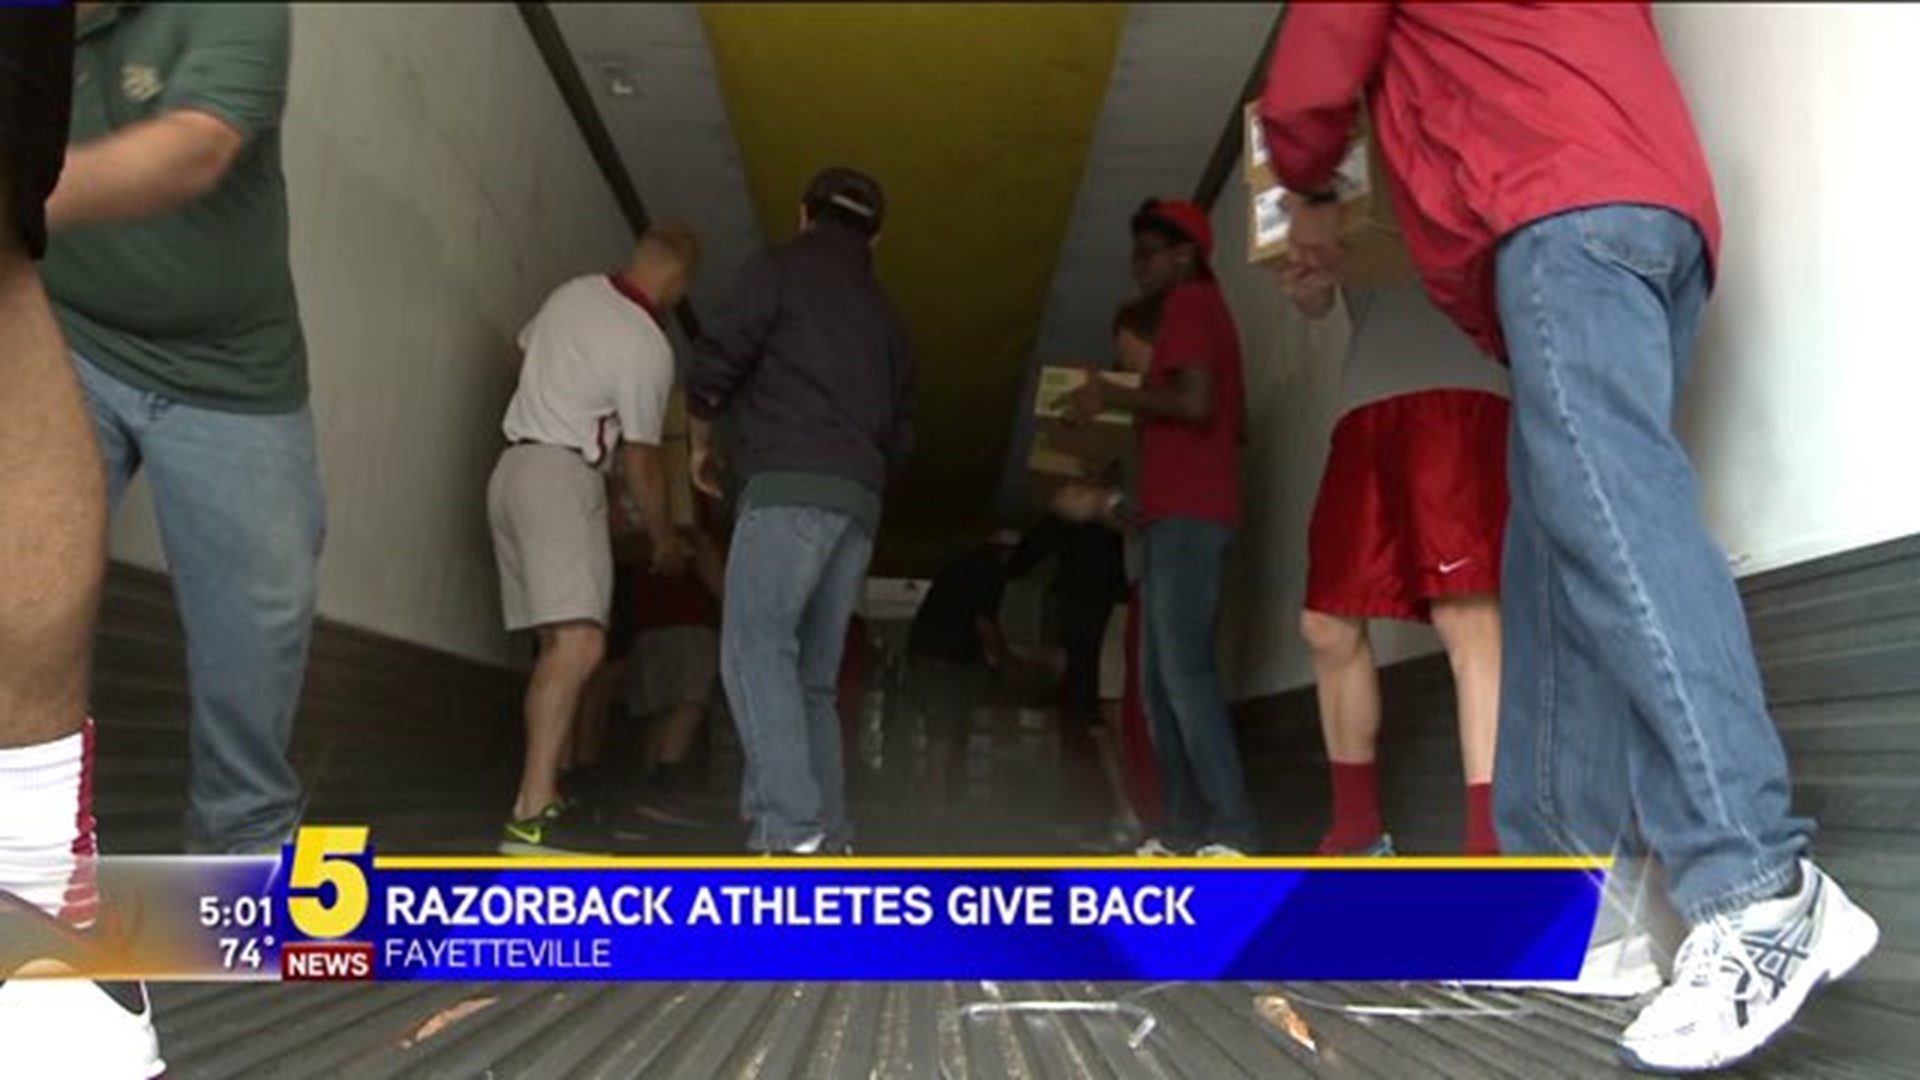 Razorback Student Athletes Give Back